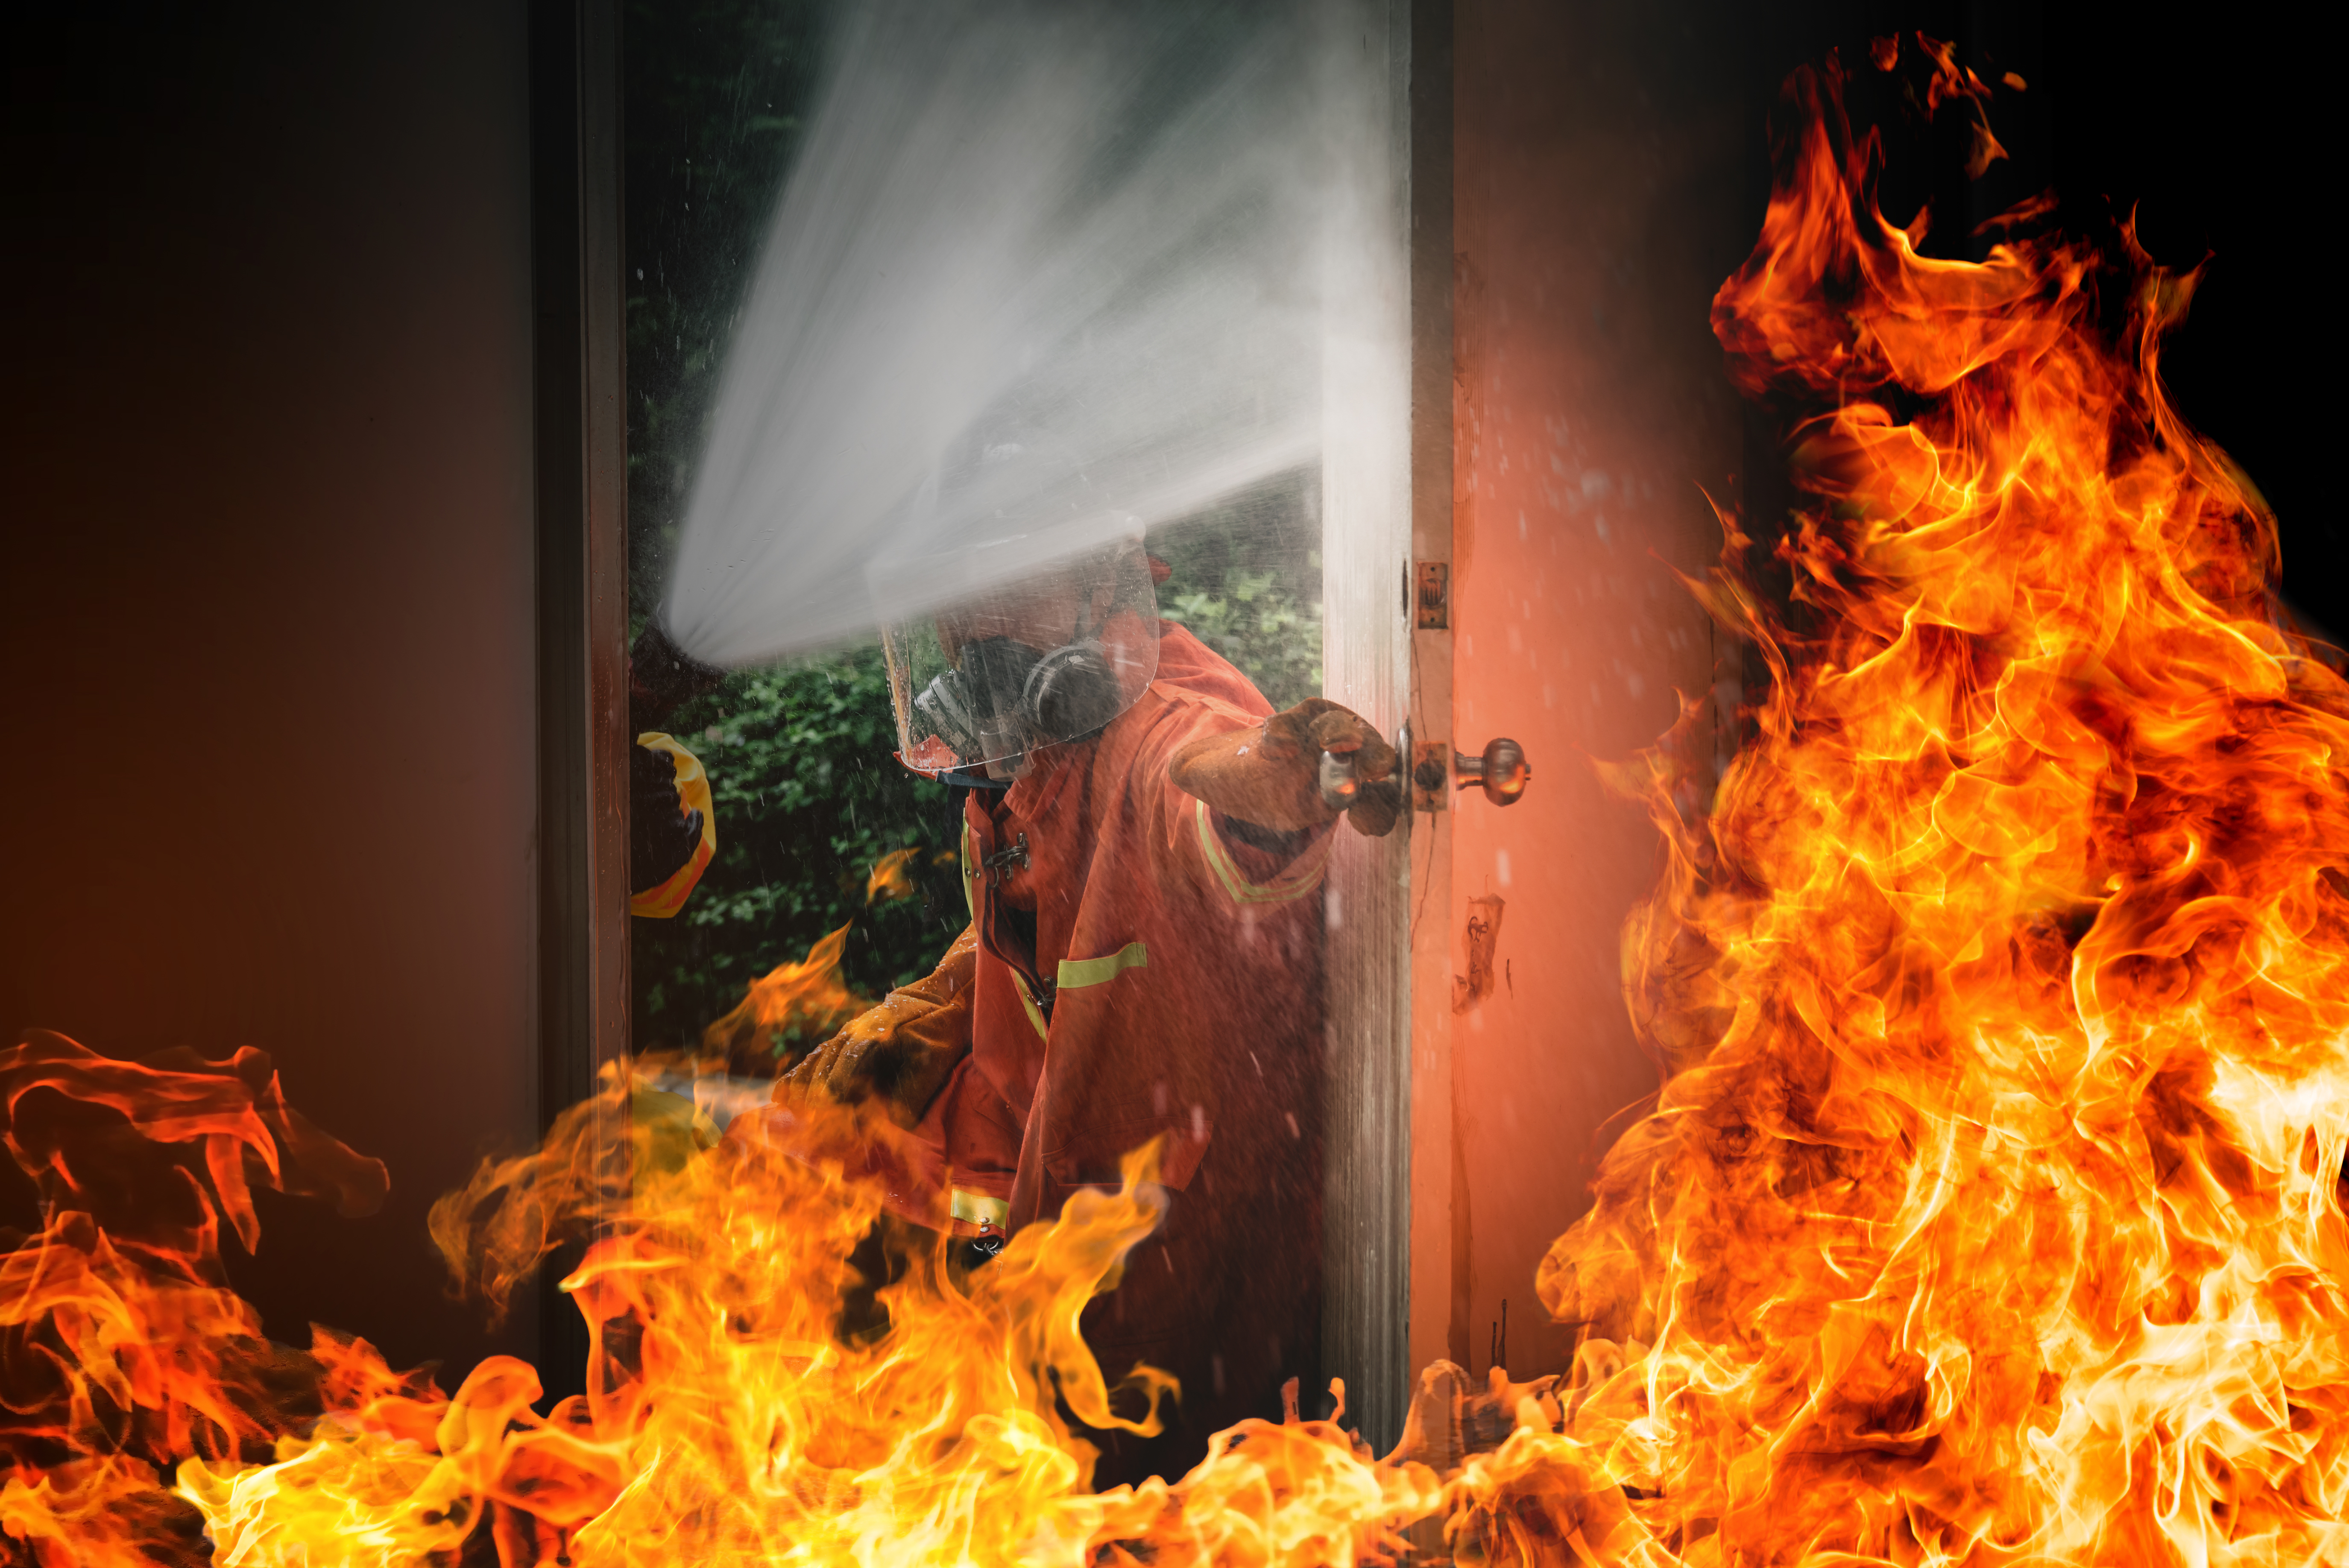 Bombero intenta apagar las llamas. Imagen con fines ilustrativos | Foto: Freepik